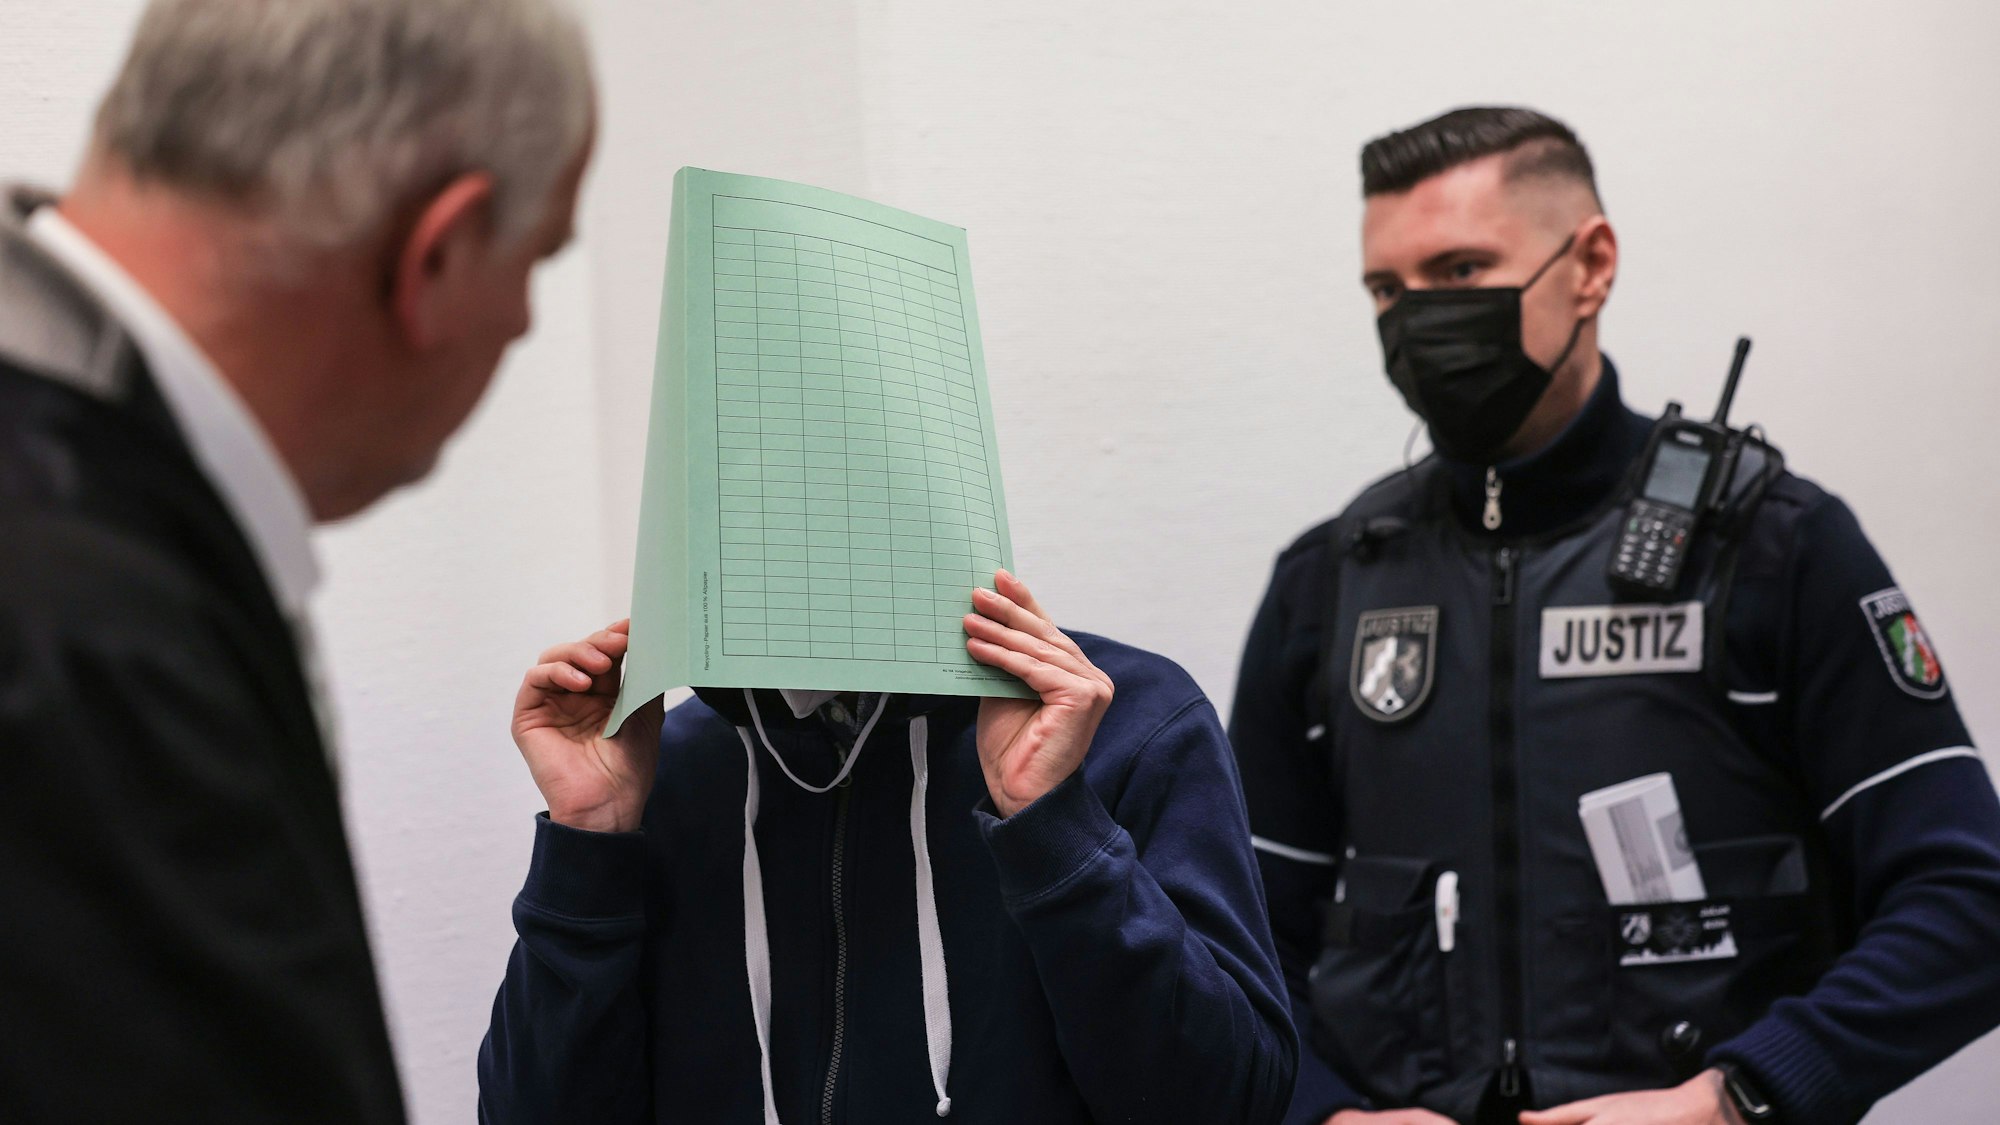 Auf dem Weg auf die Anklagebank: Der 45-jährige Angeklagte hielt sich zum Schutz vor den Fotografen eine Mappe vor das Gesicht.